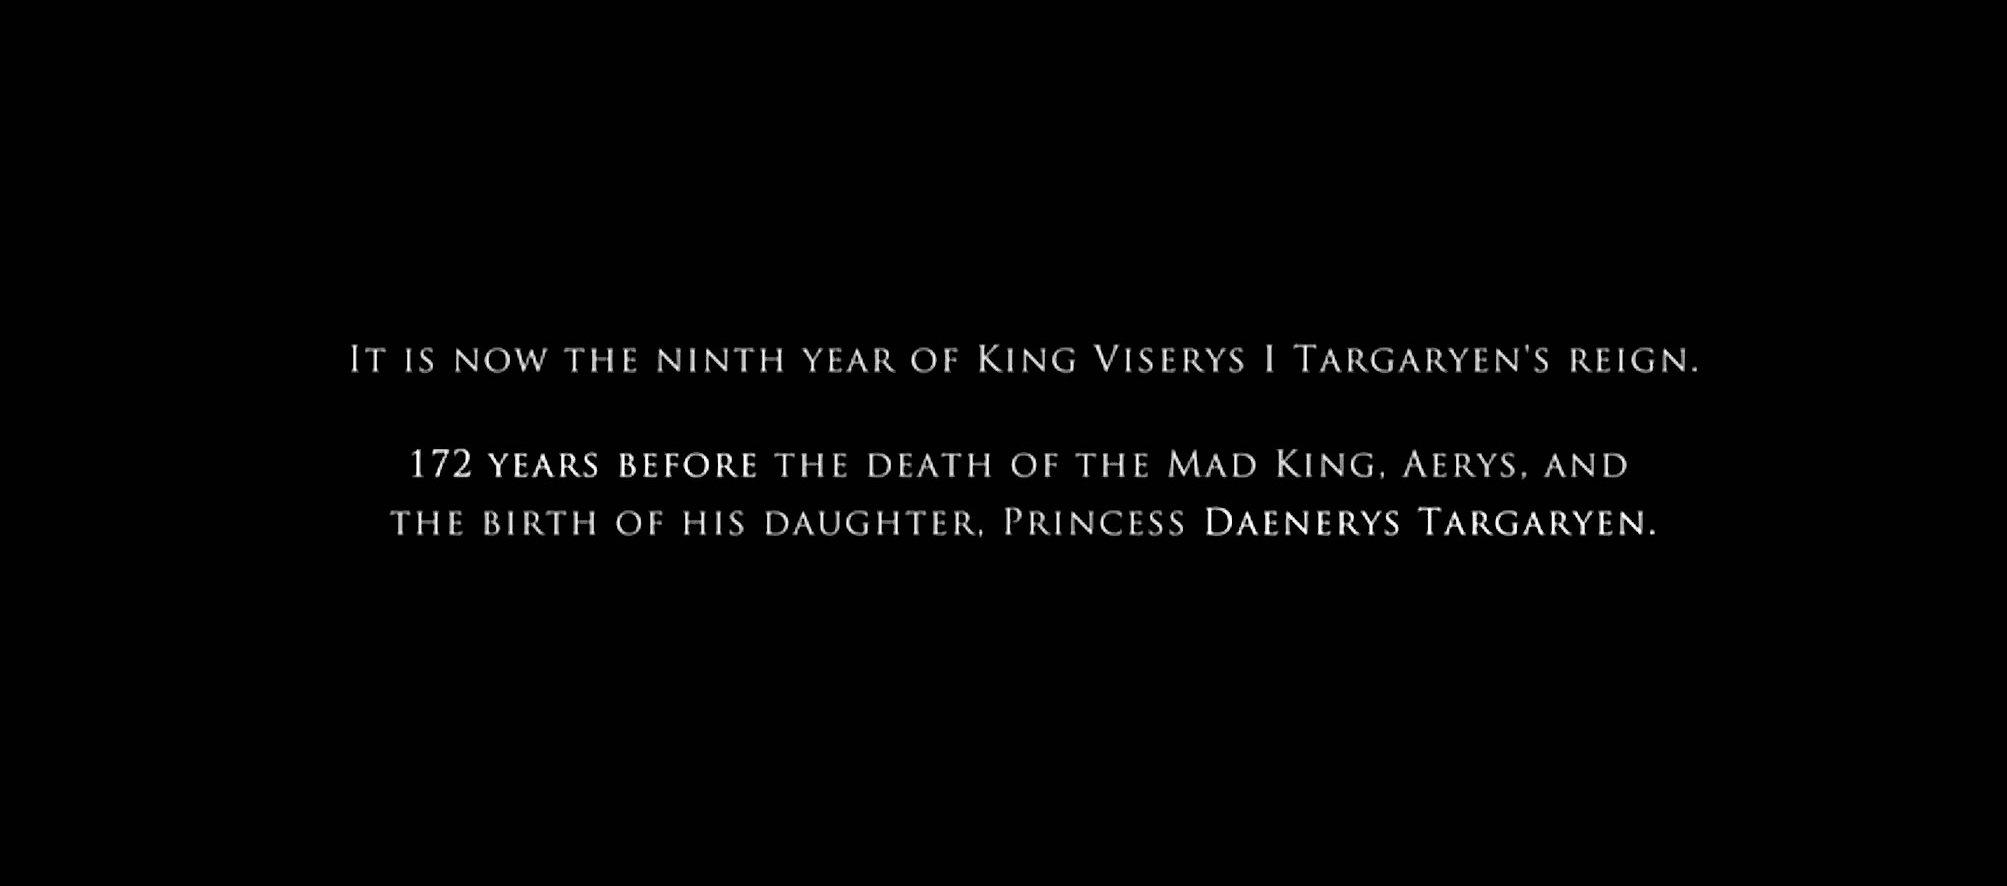 《龙之屋》设定在疯王去世和他的女儿丹妮莉丝·坦格利安出生前 172 年。